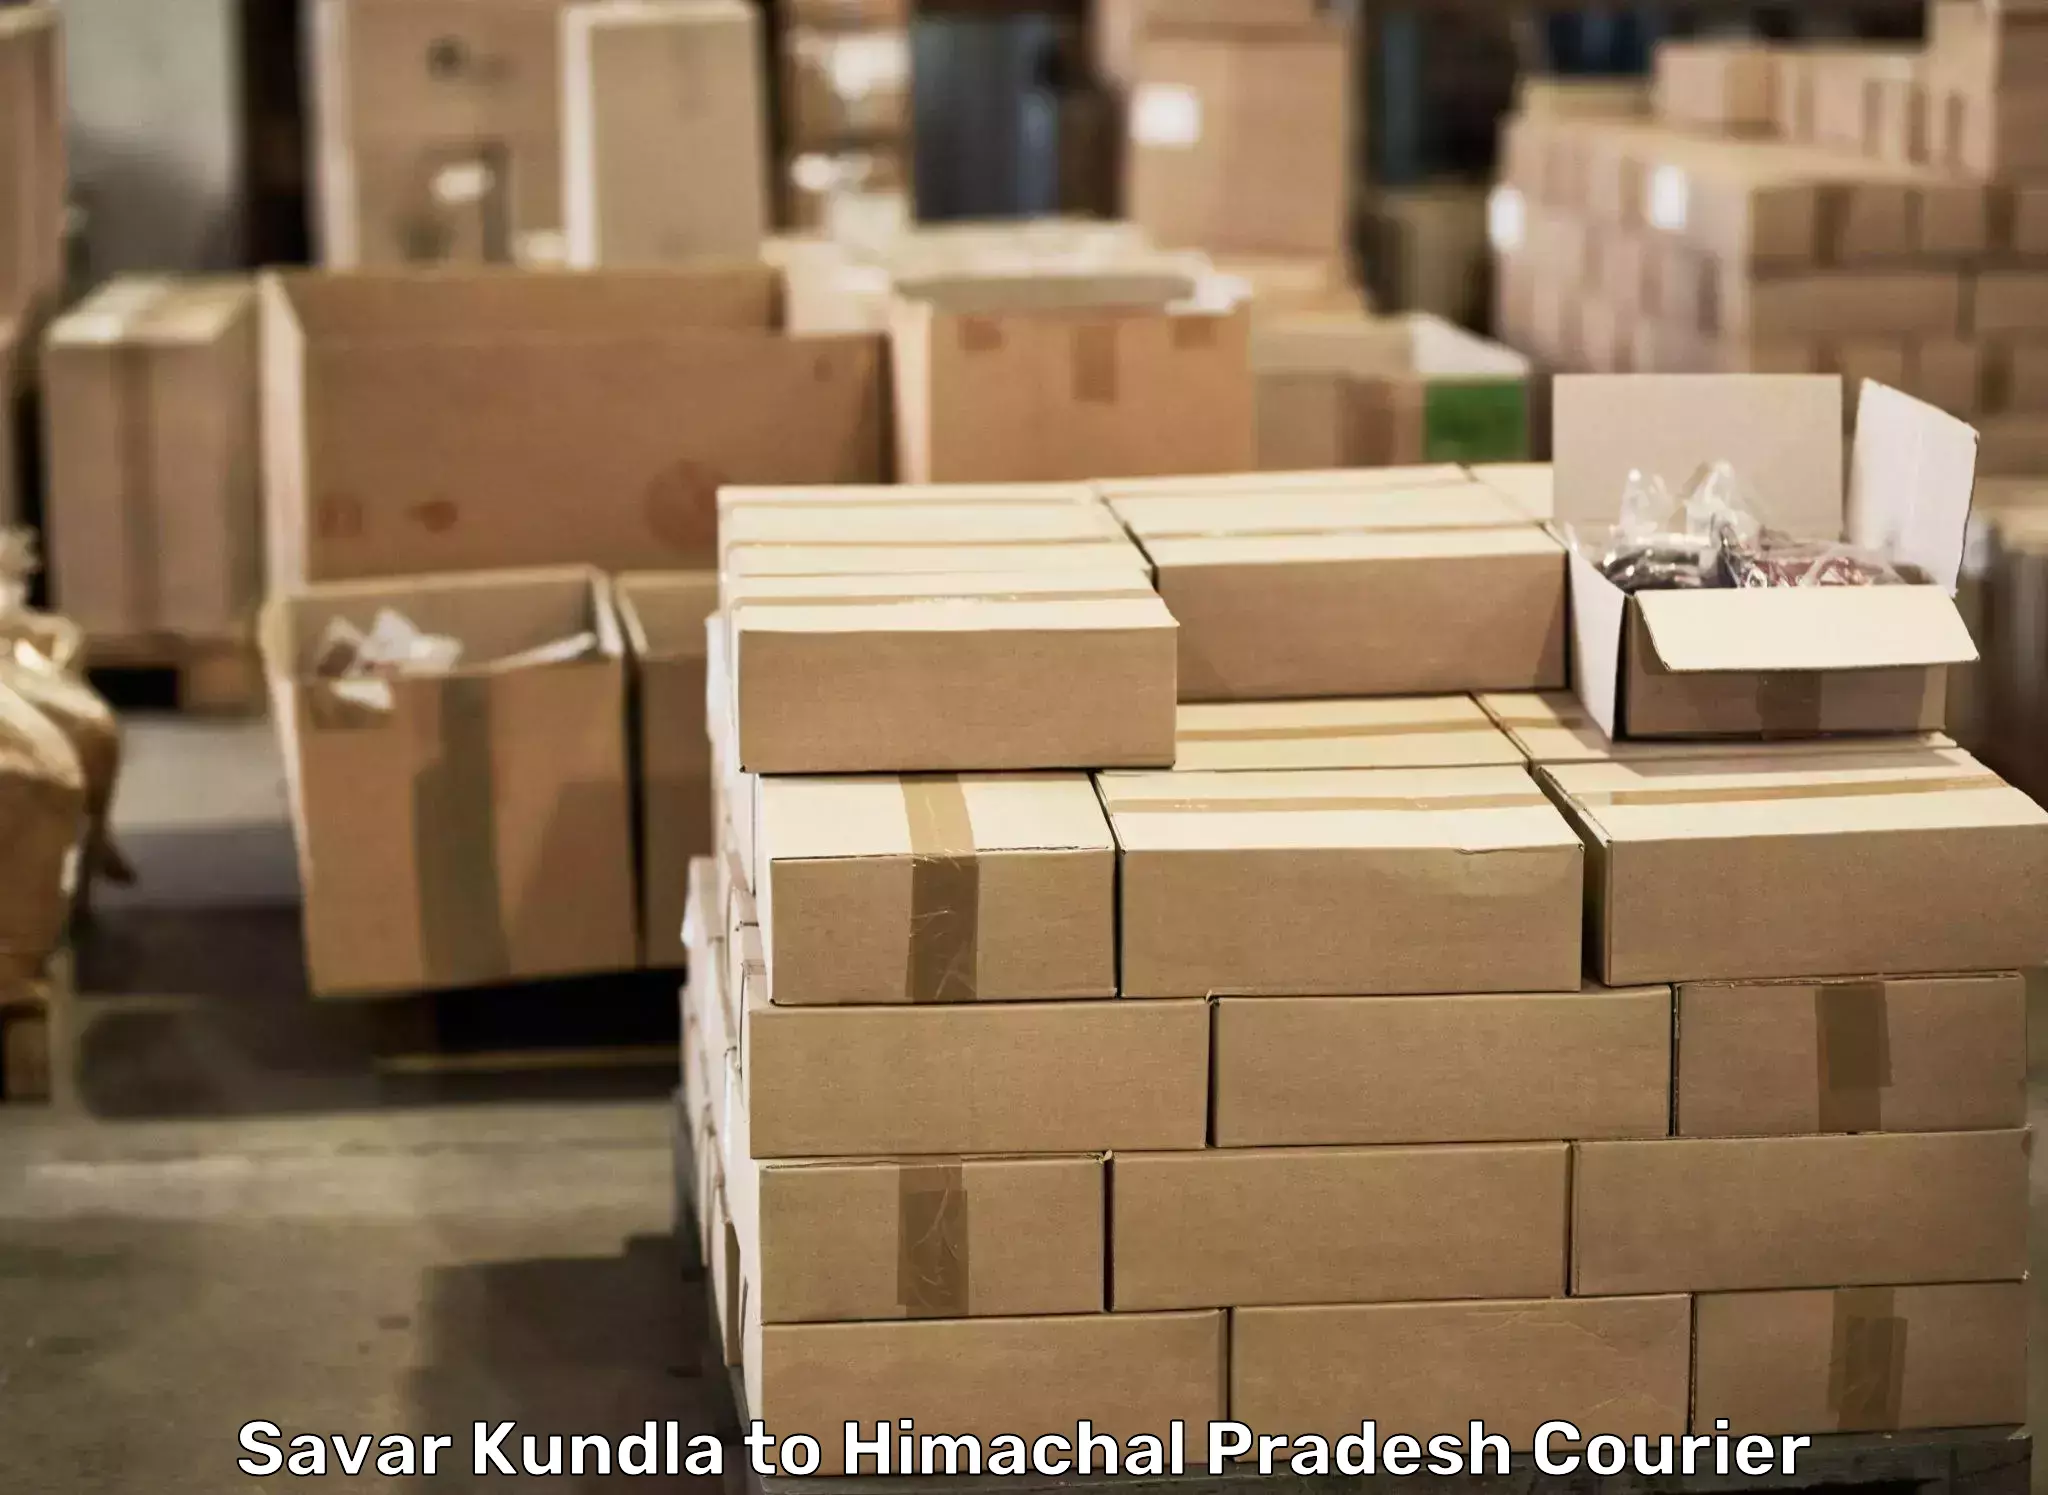 Dependable household movers Savar Kundla to Una Himachal Pradesh